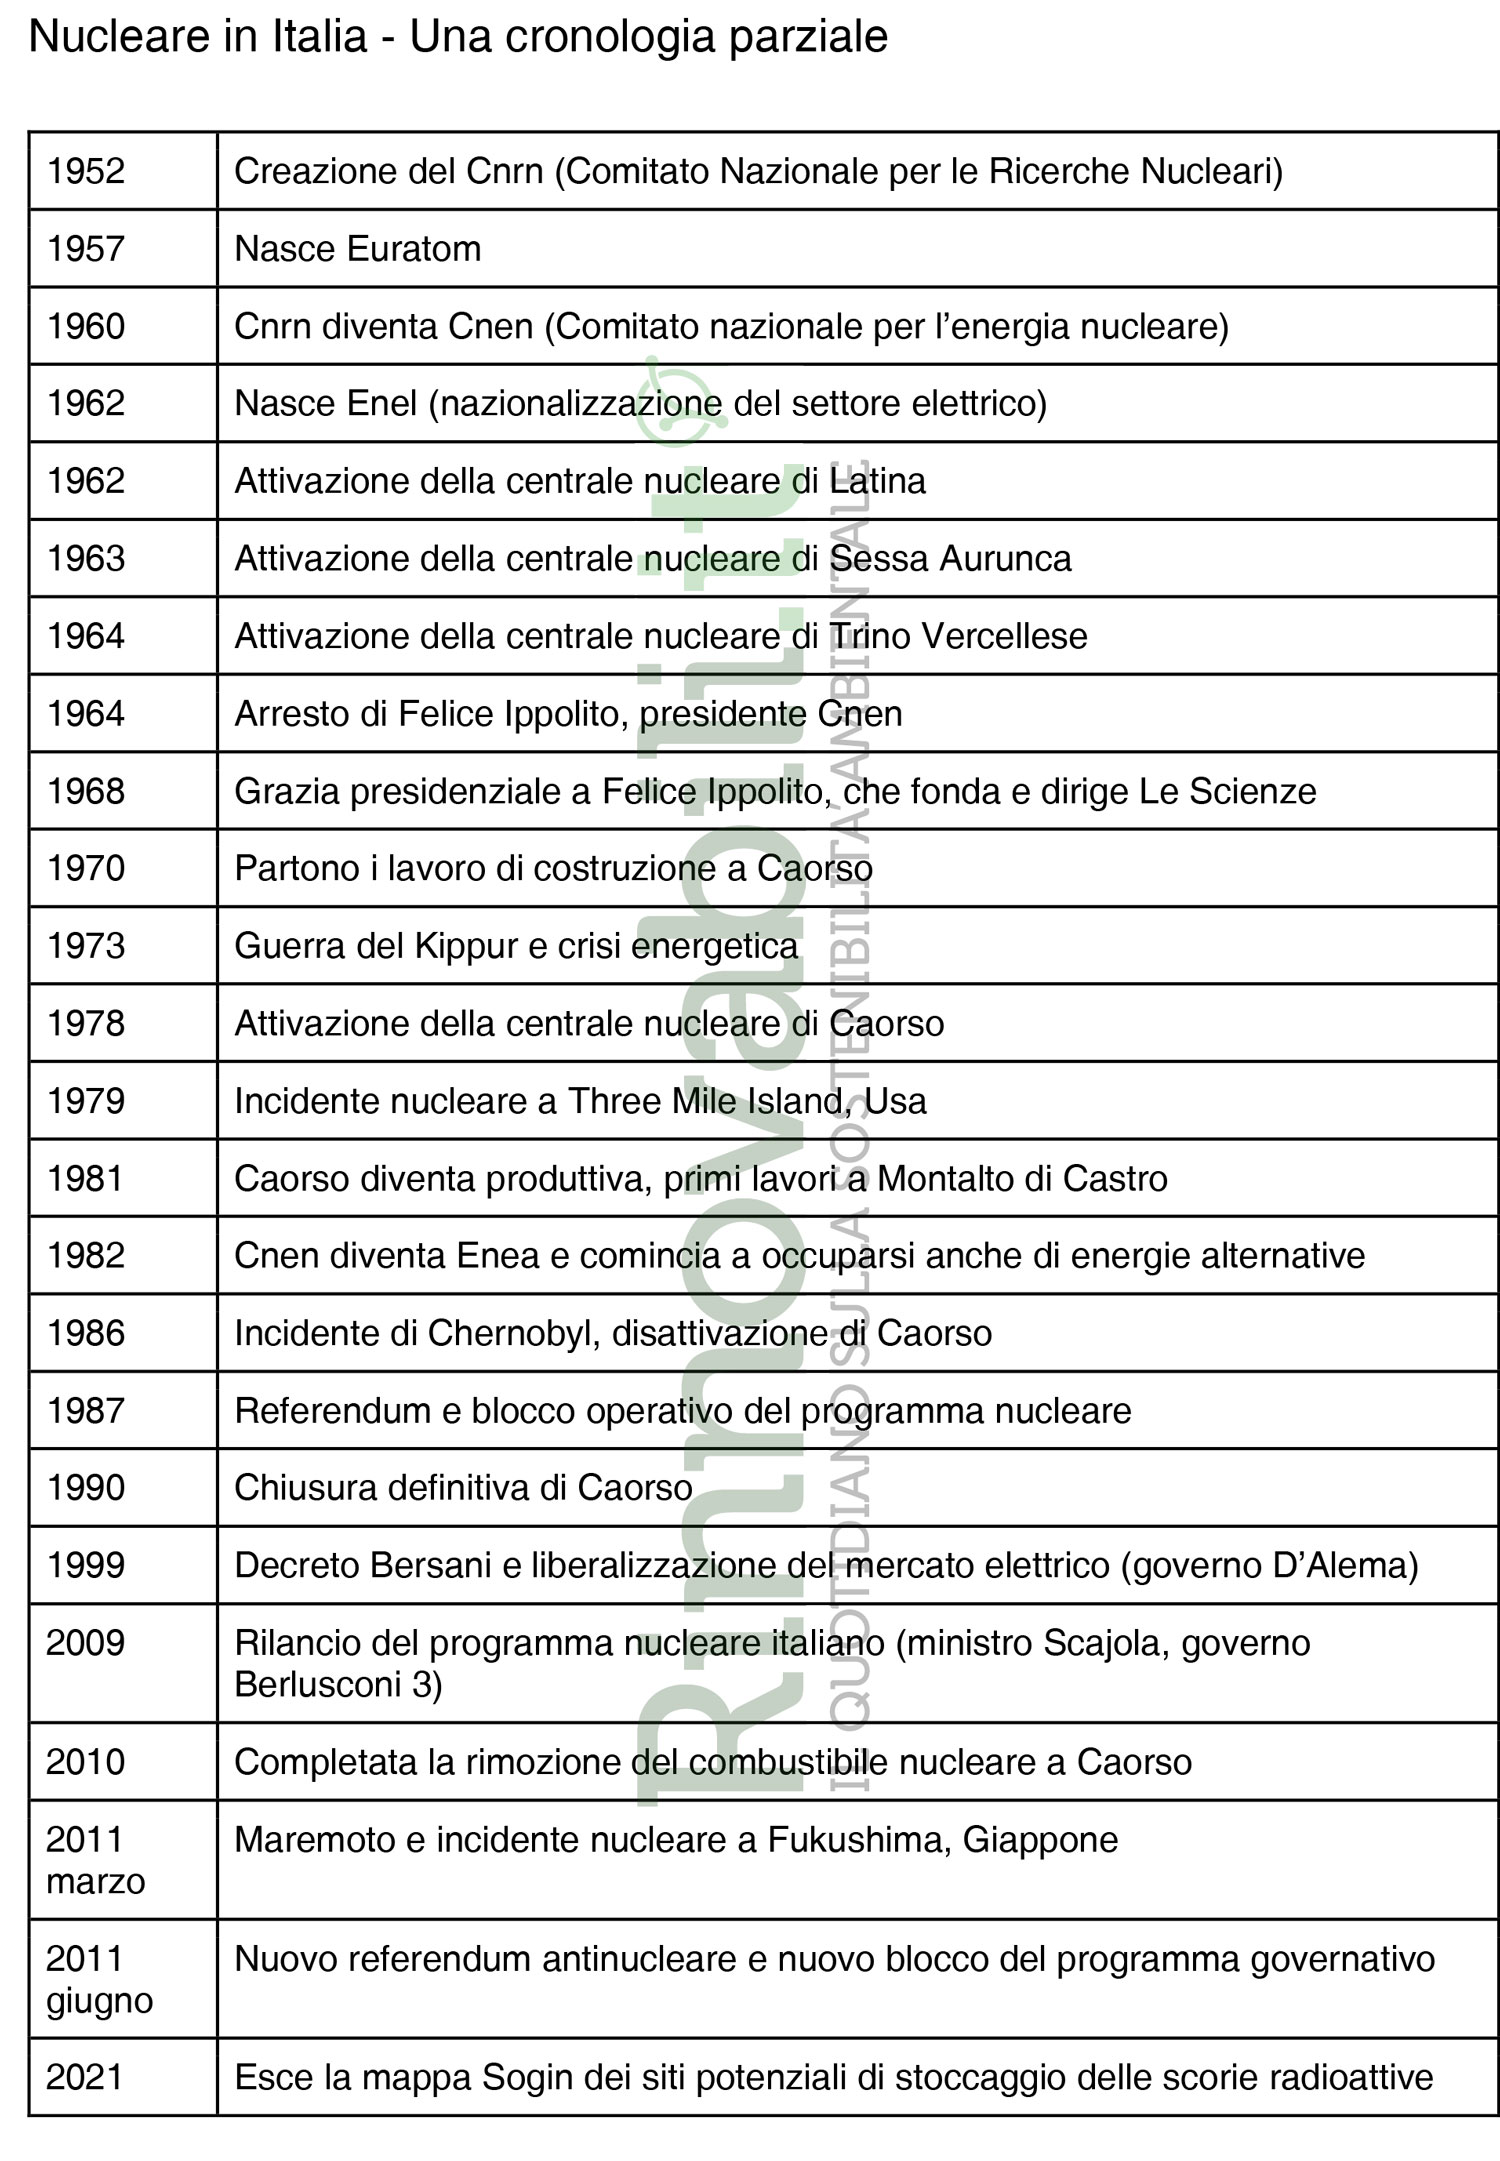 Cronologia nucleare in Italia